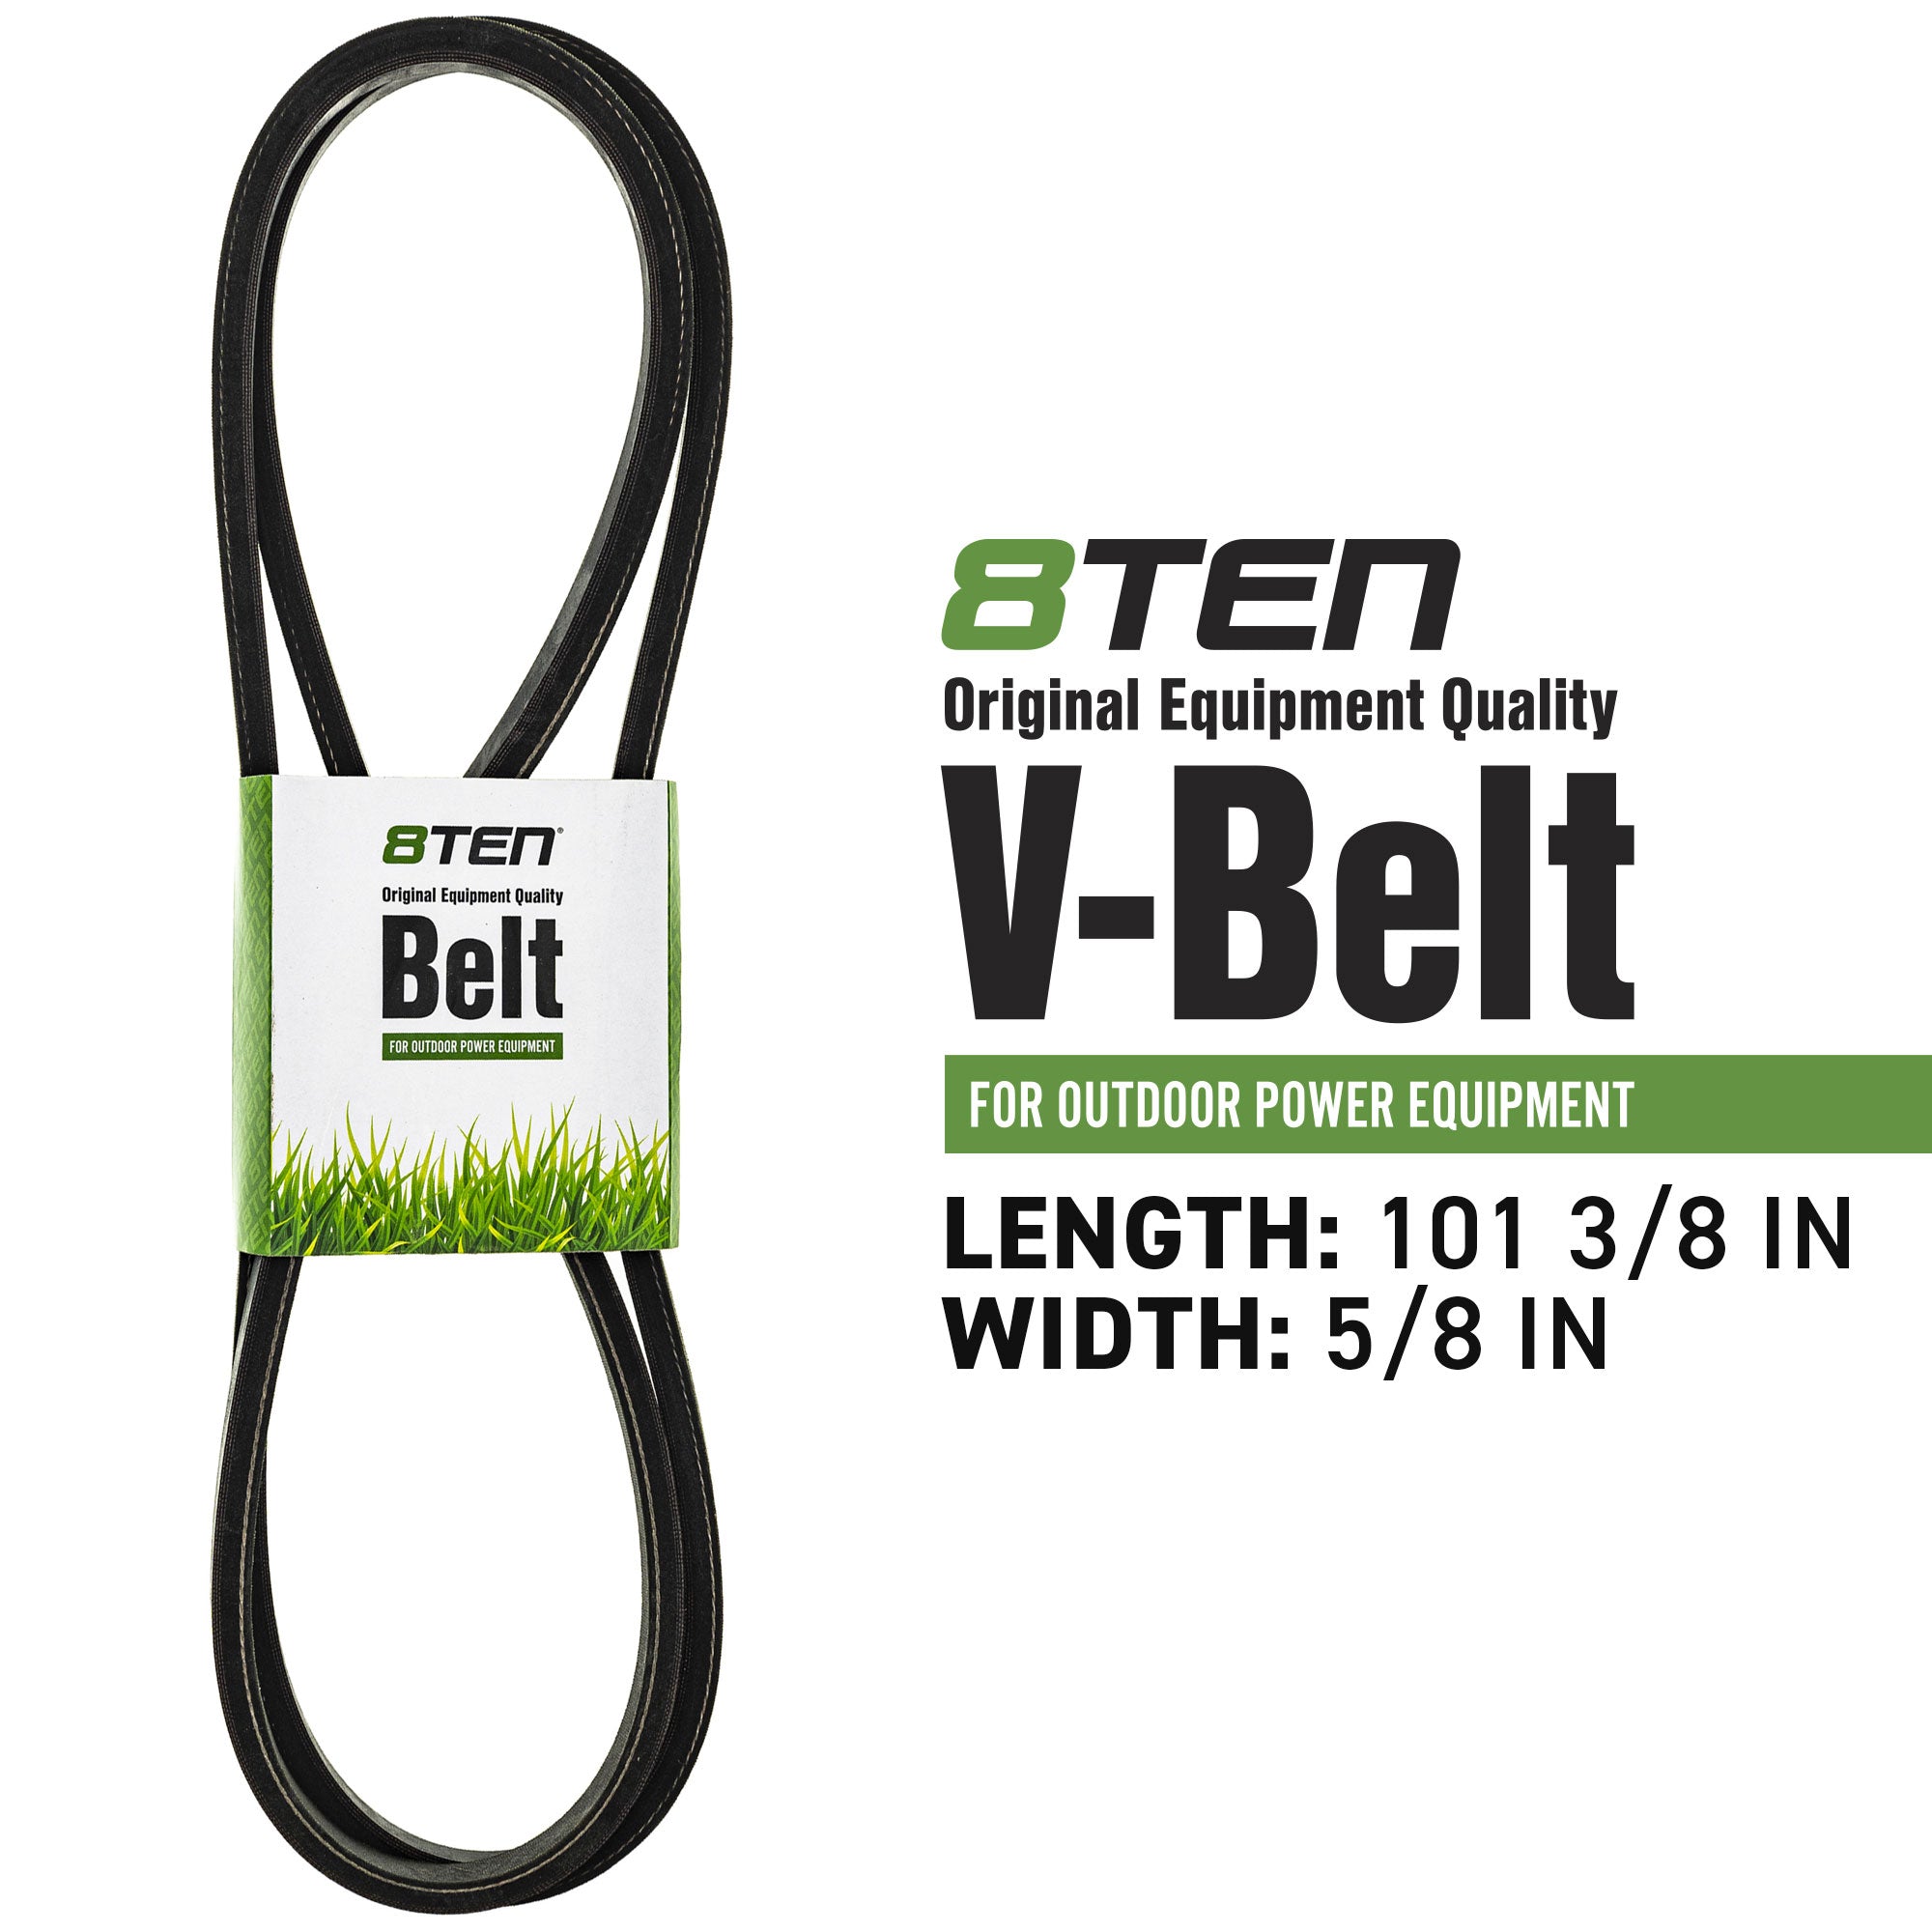 Blade Spindle Belt Idler Kit for Exmark Turf Tracer 103-8075 103-8074 52-Inch